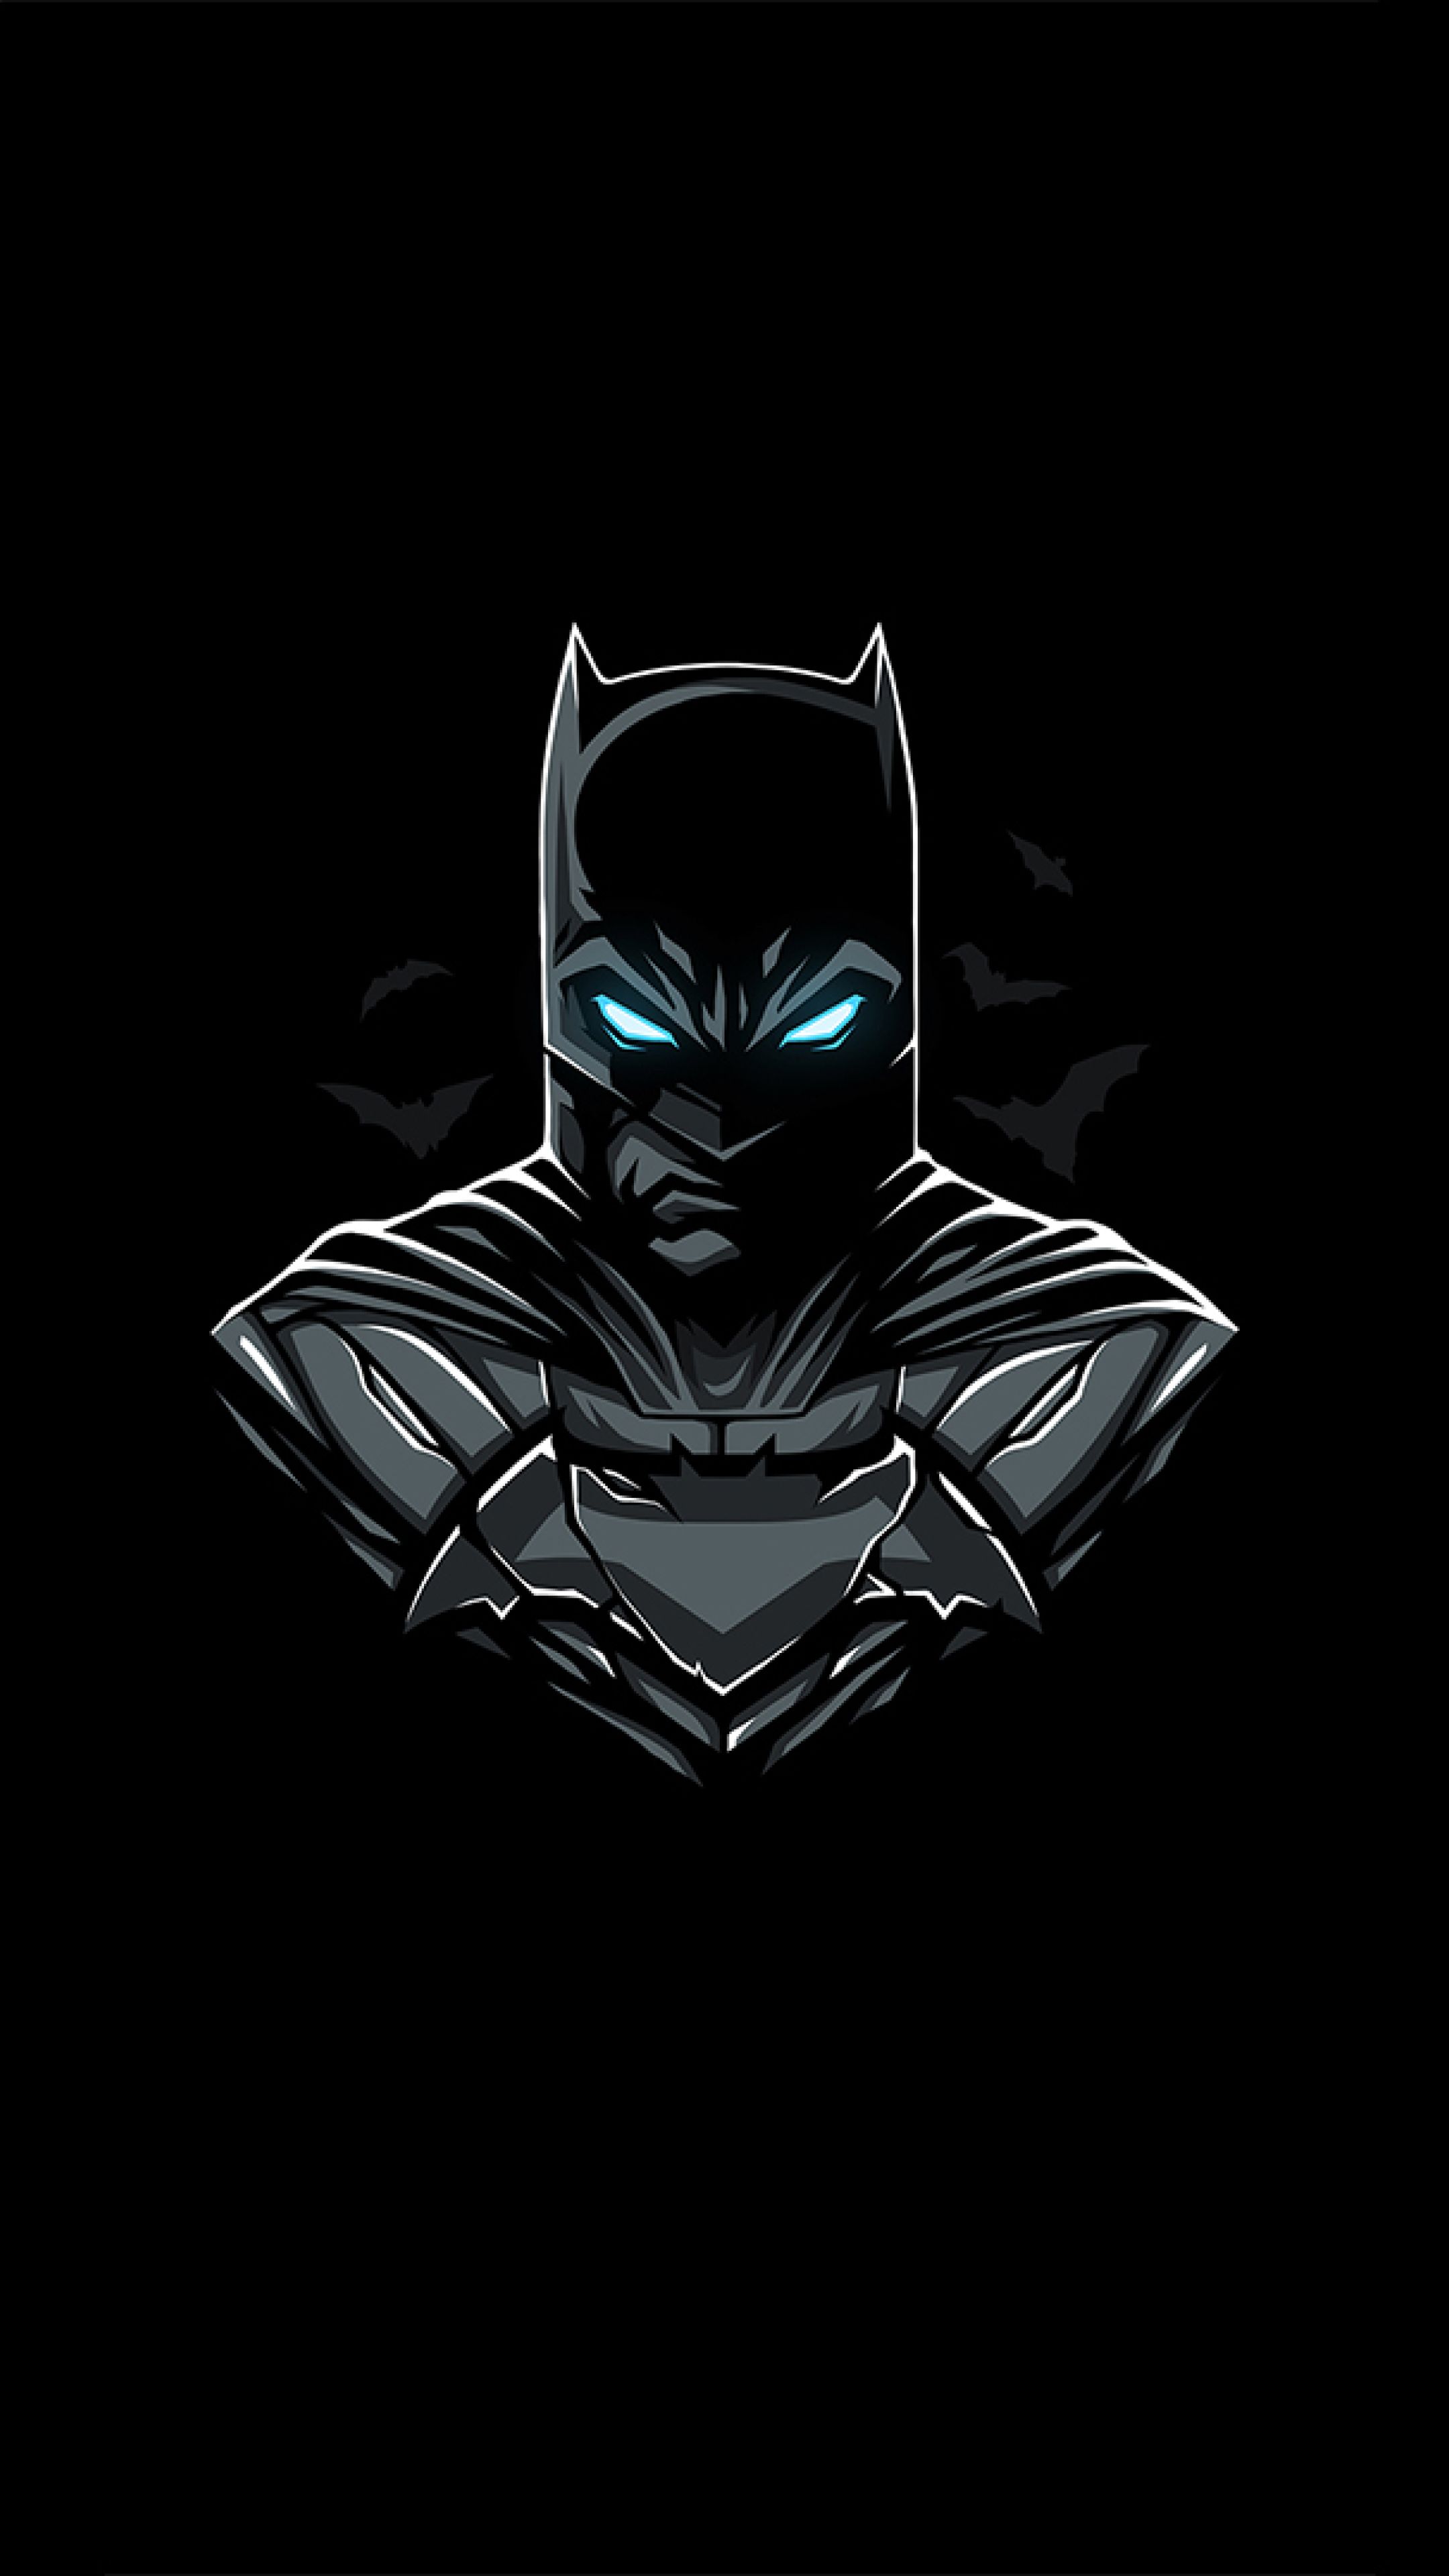 Batman DC Minimalist Sony Xperia X, XZ, Z5 Premium